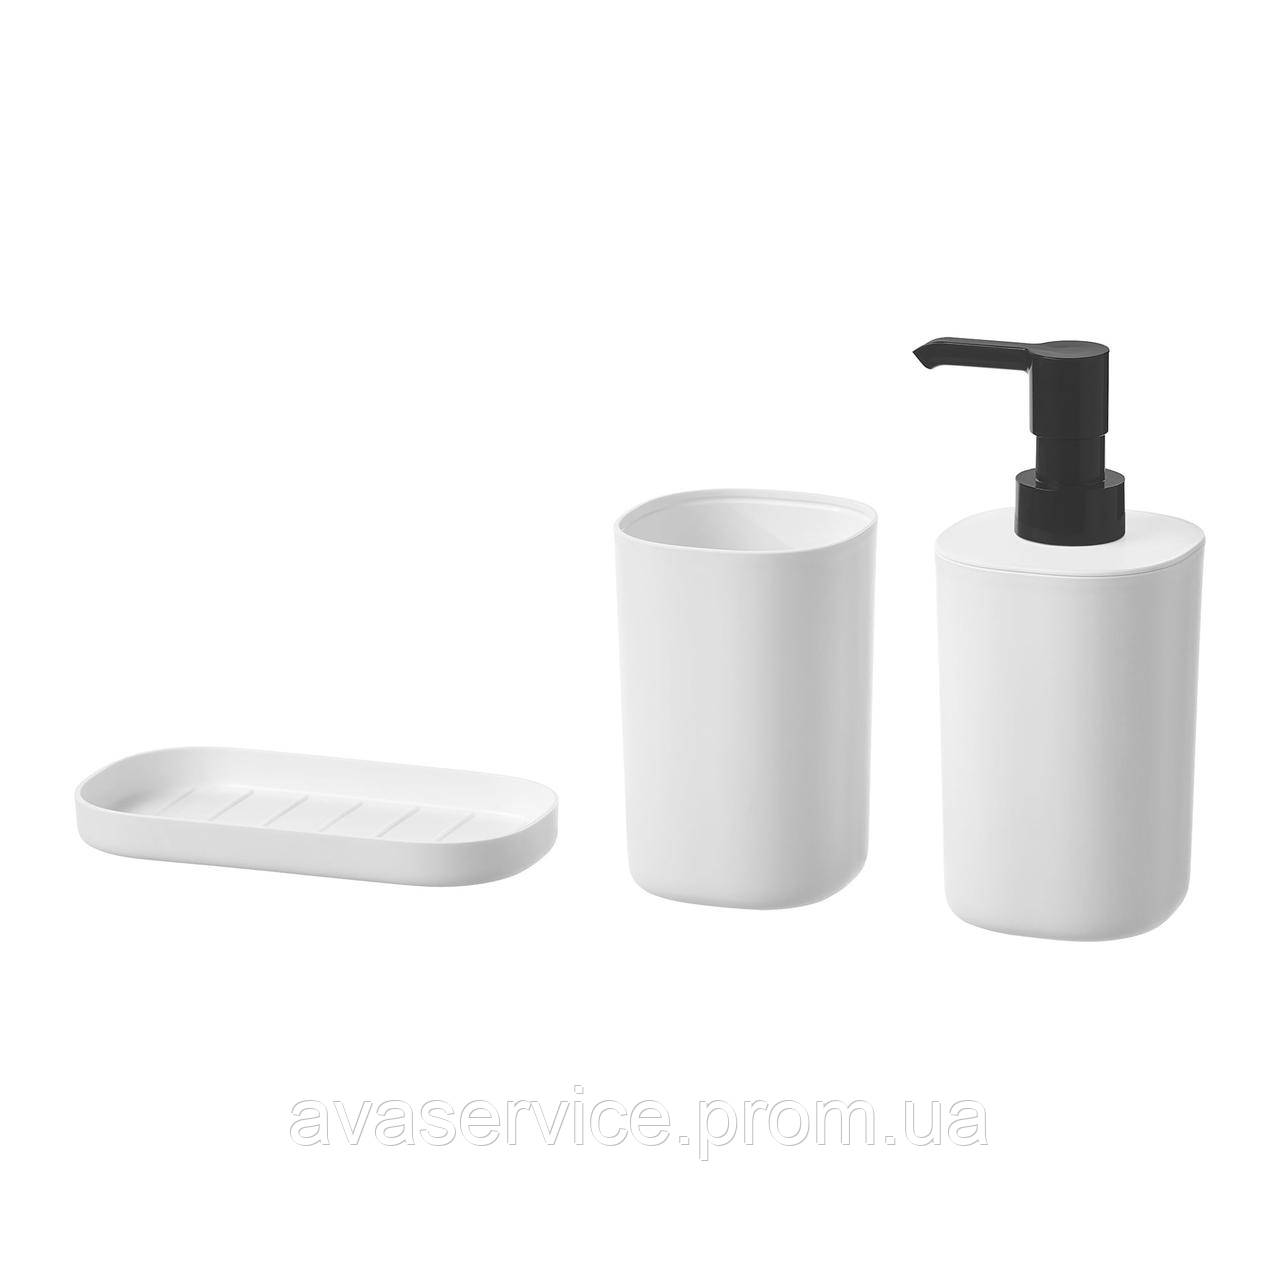 Набор аксессуаров IKEA STORAVAN для ванной комнаты 3 предмета 704.290.03